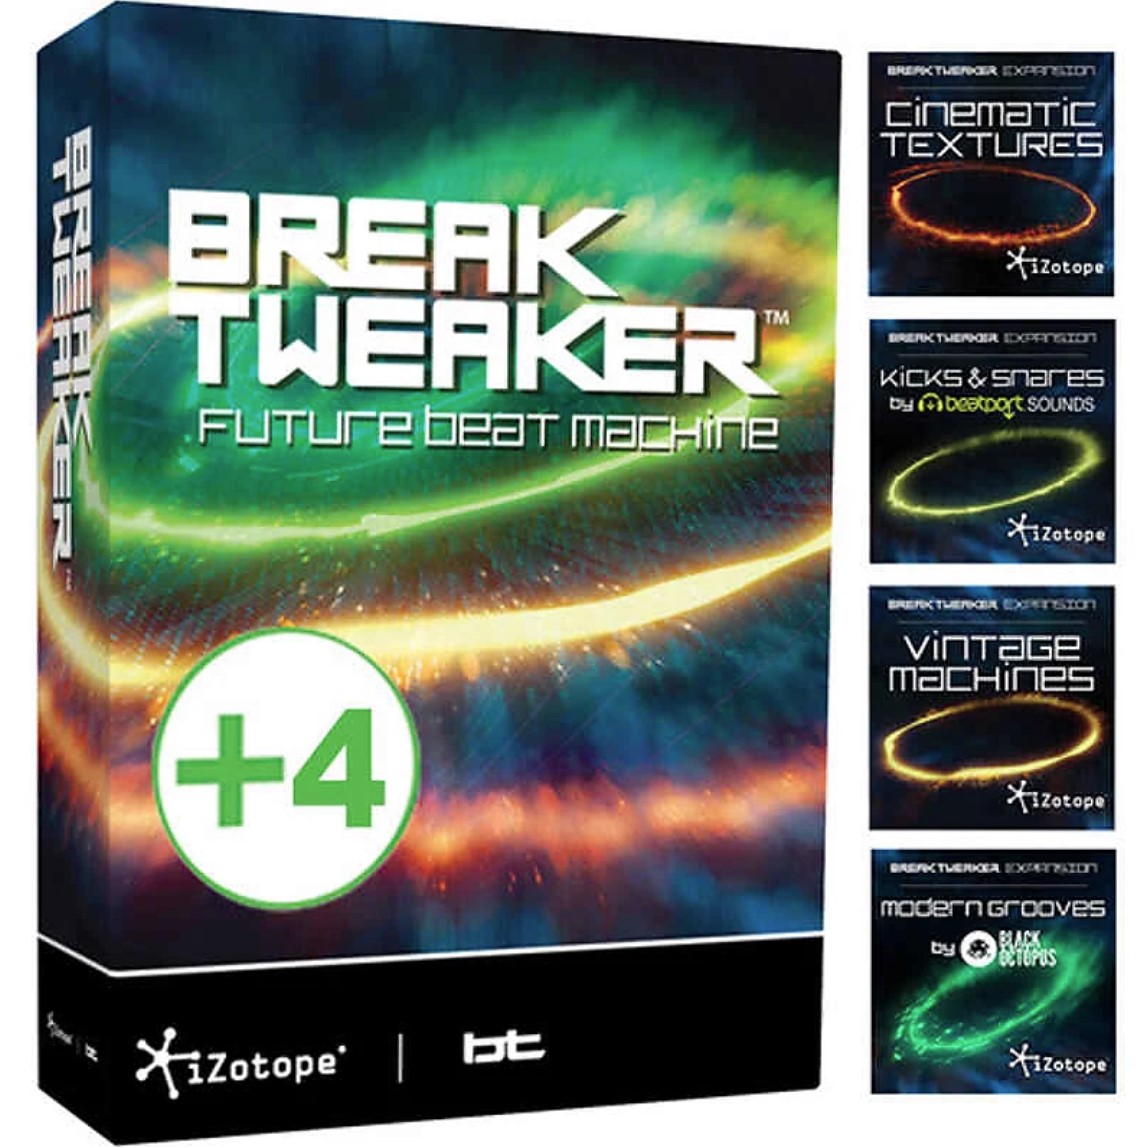 iZotope BreakTweaker Expanded Bundle (Break  Tweaker)